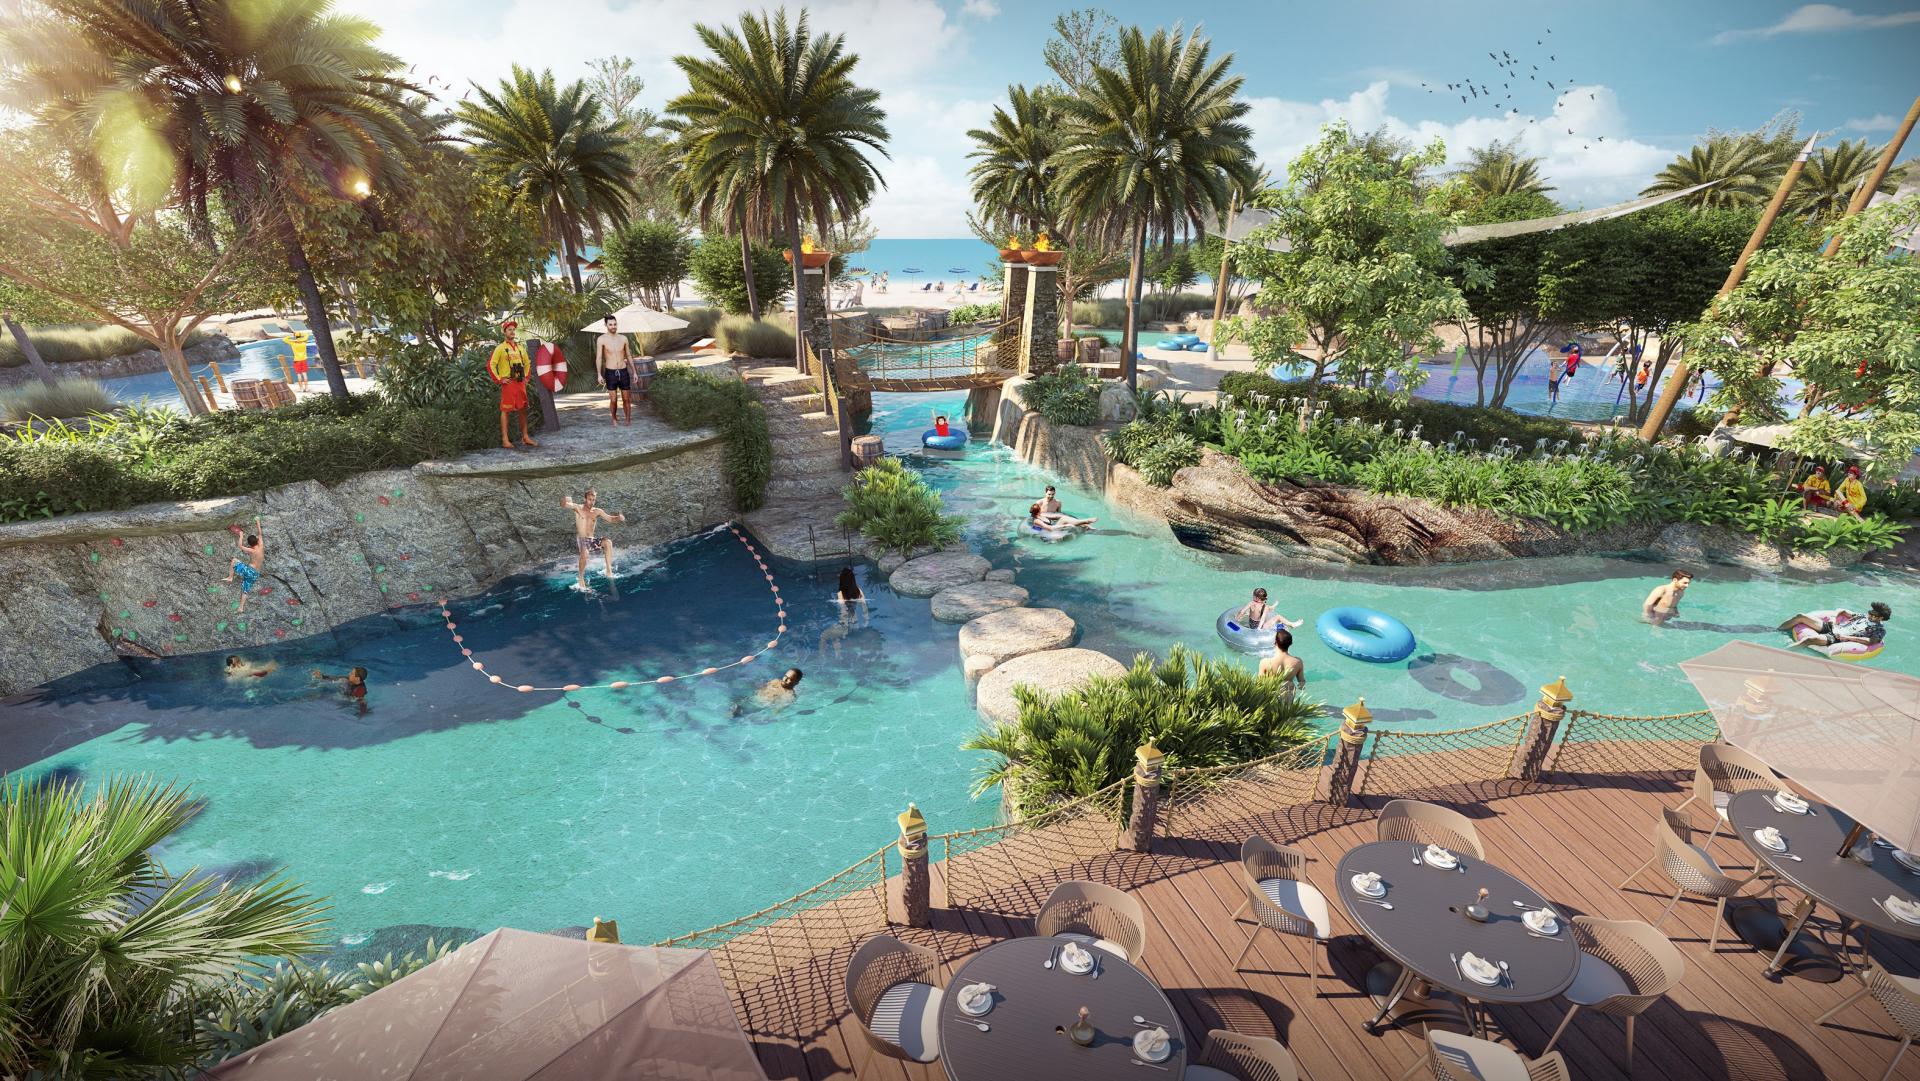 Centara Mirage Beach Resort Dubai. - Zjednoczone Emiraty Arabskie